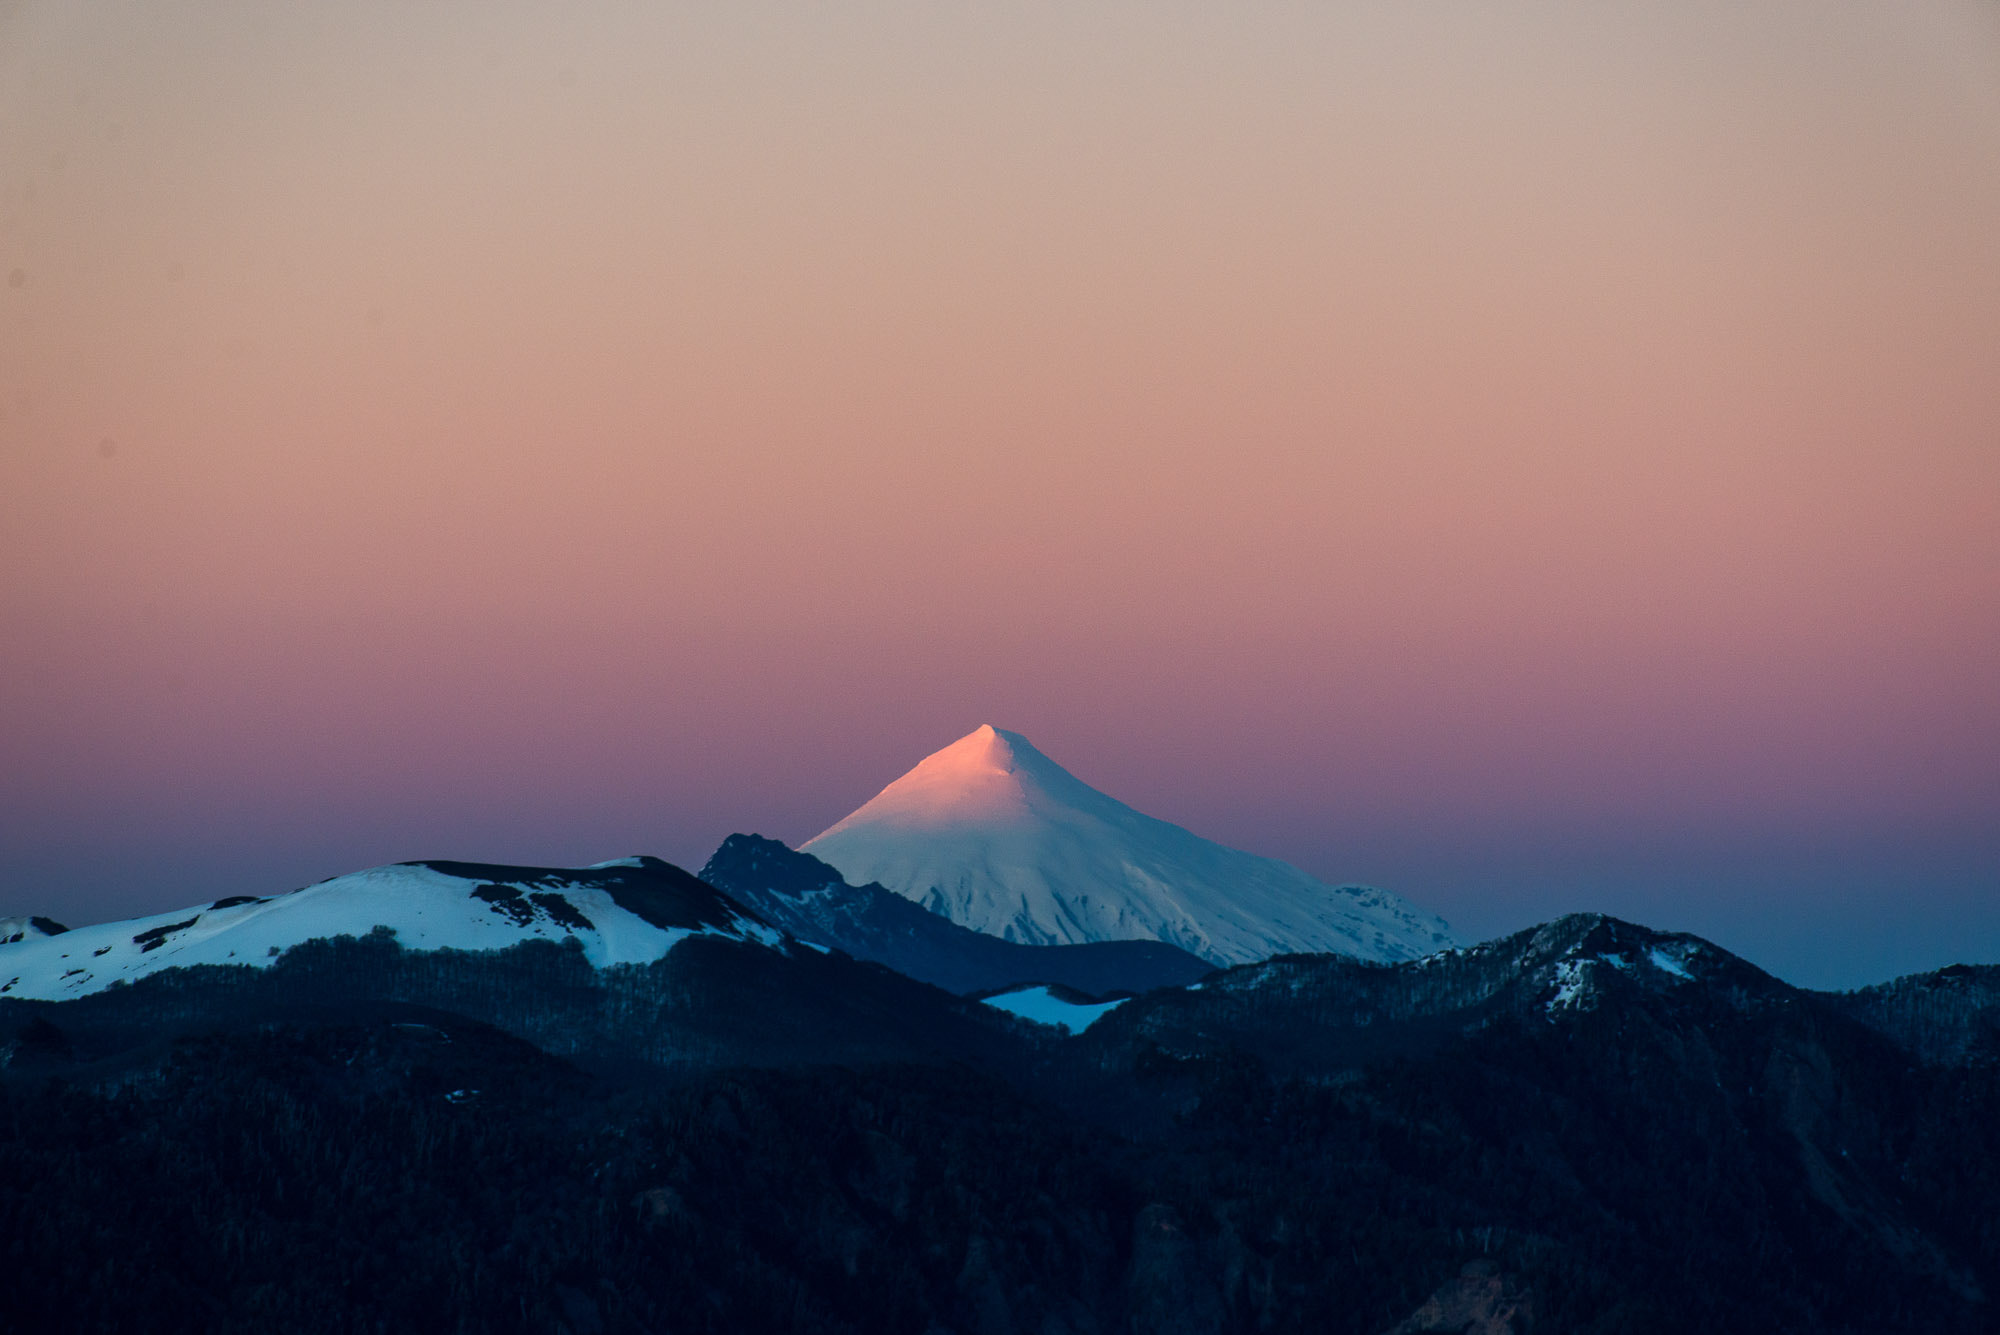 AF Nikkor 70-210mm f/4-5.6D sample photo. Sunrise at volcano villarica, chile photography